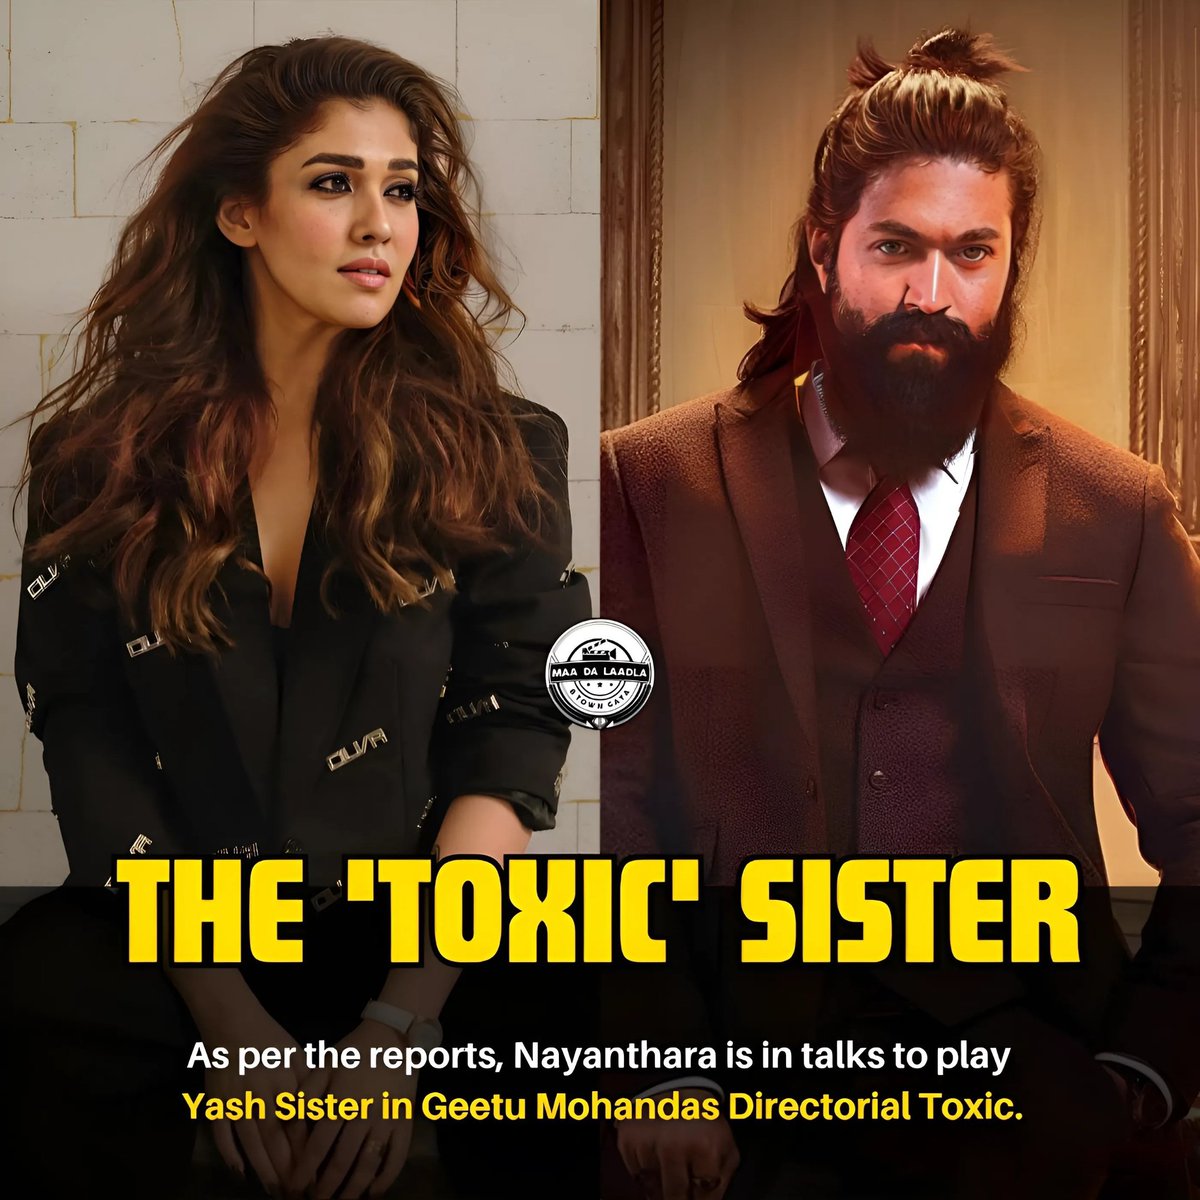 #Nayanthara to play #Yash Sister in #GeetuMohandas directorial #Toxic after #KareenaKapoorKhan backs out? 🔥🔥🔥

#KareenaKapoor #YashBOSS